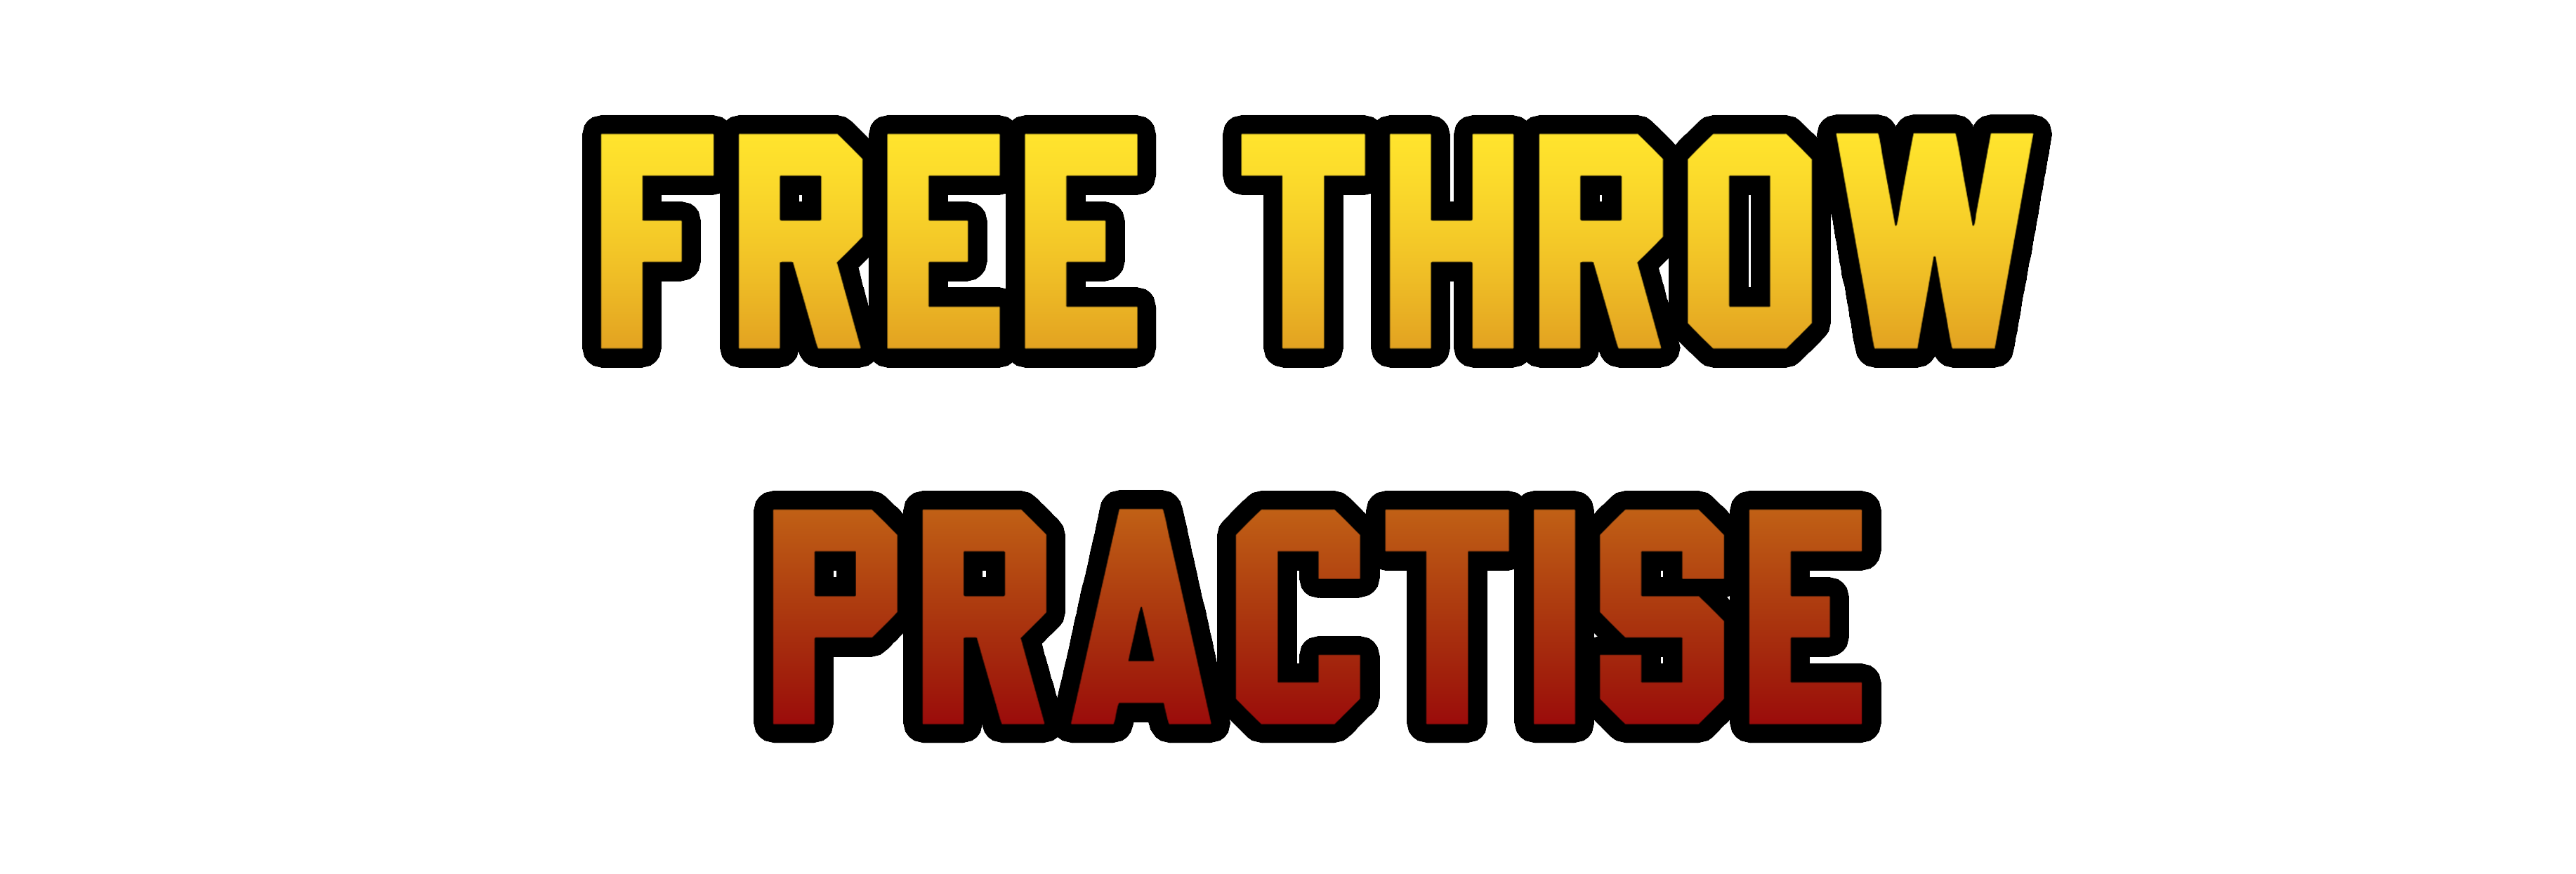 Free Throw Practise